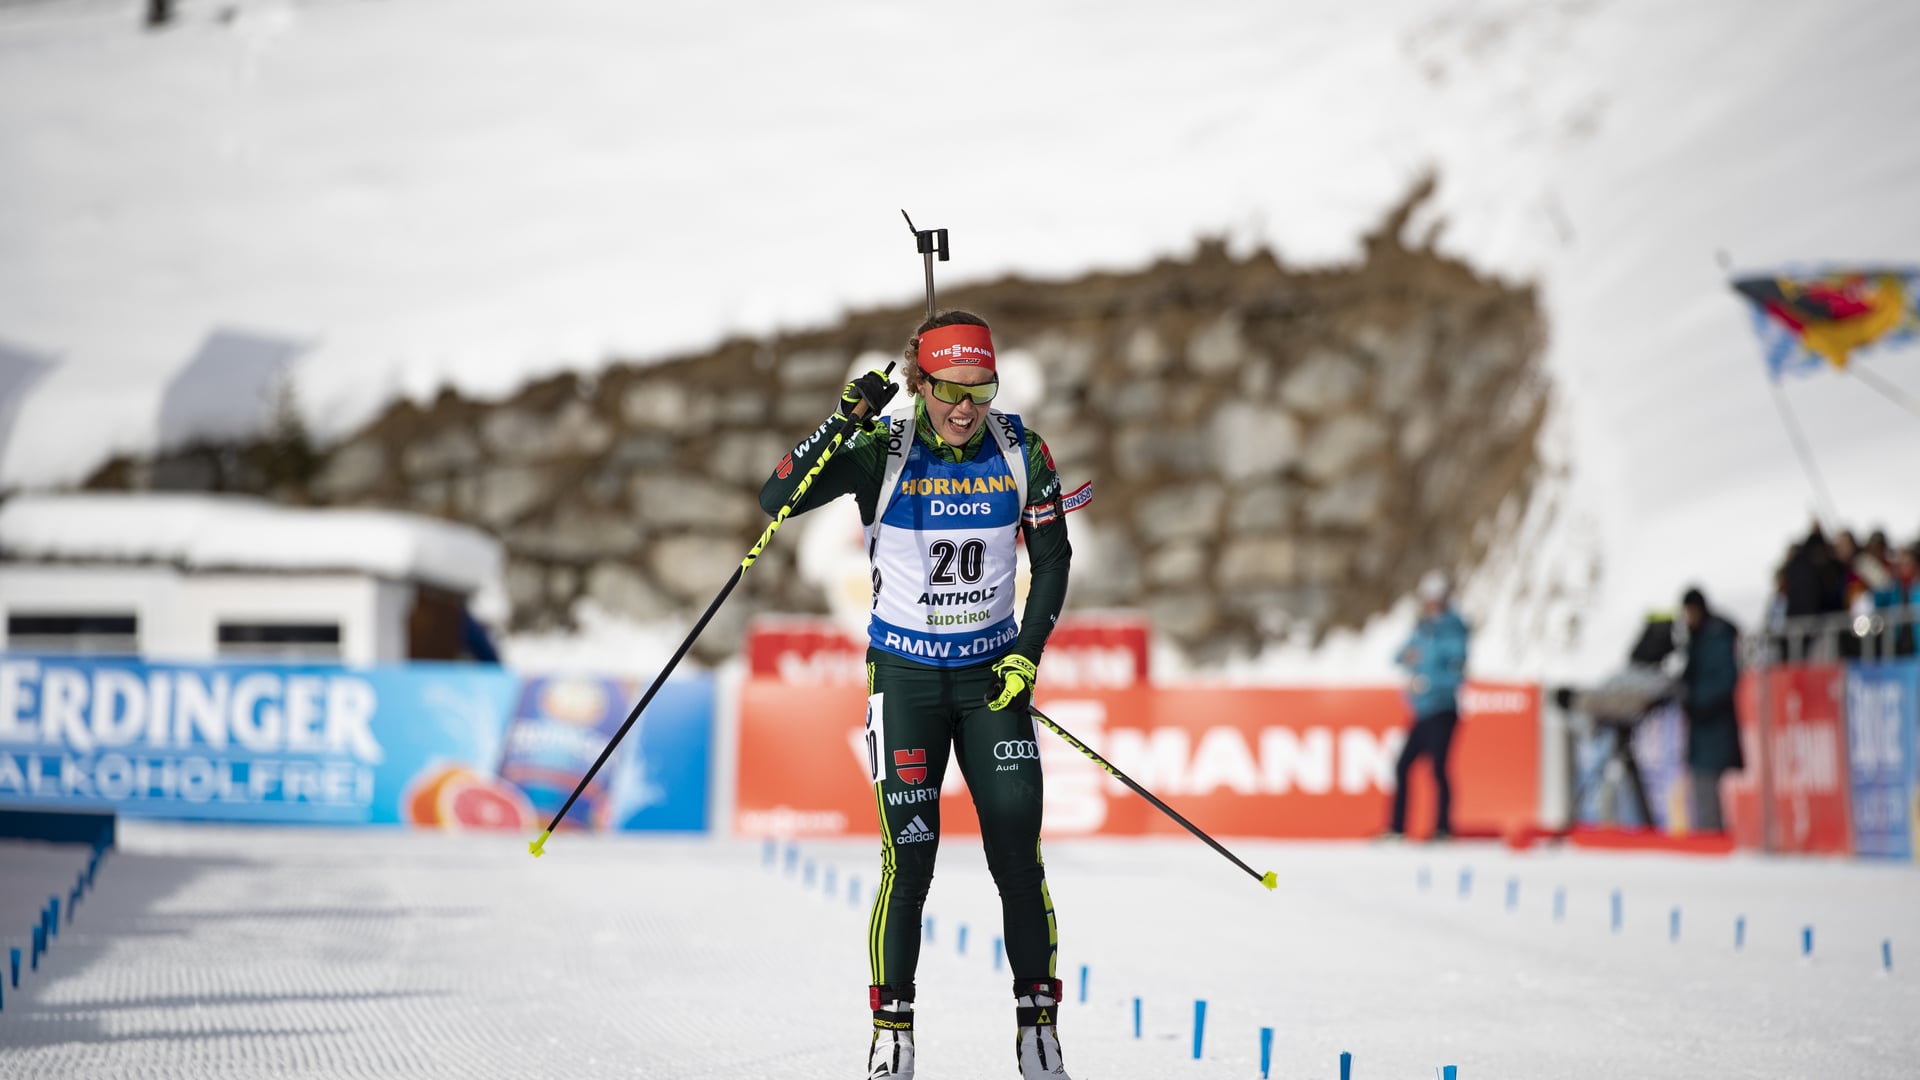 27.01.2019 - Laura Dahlmeier gewinnt Massenstart in Antholz